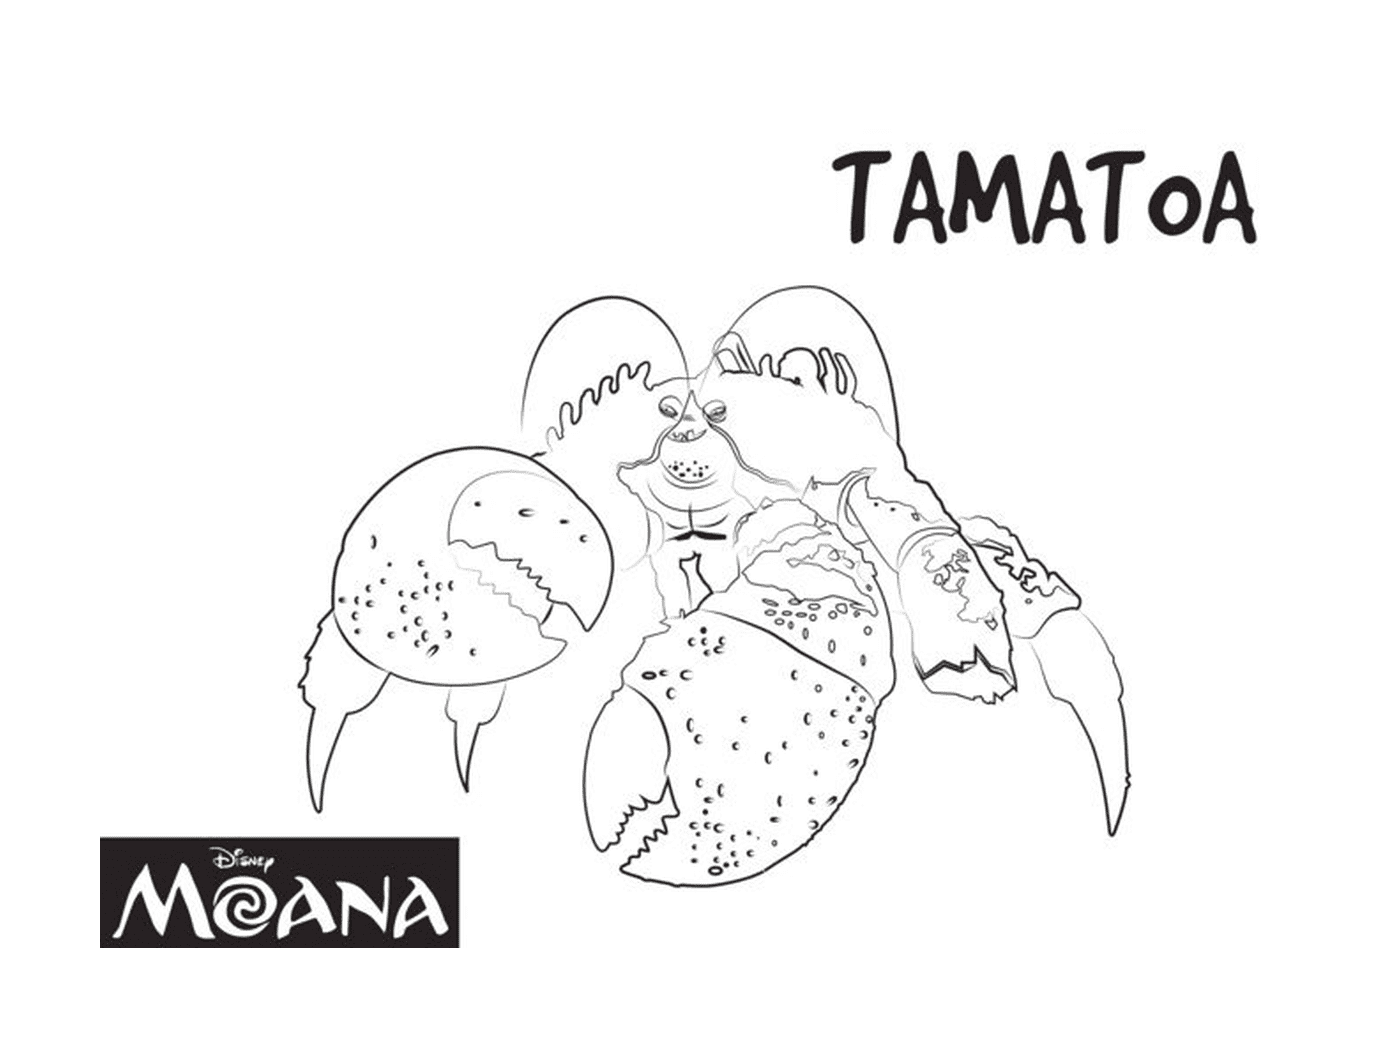  Tamatoa, criatura exótica de Moana 